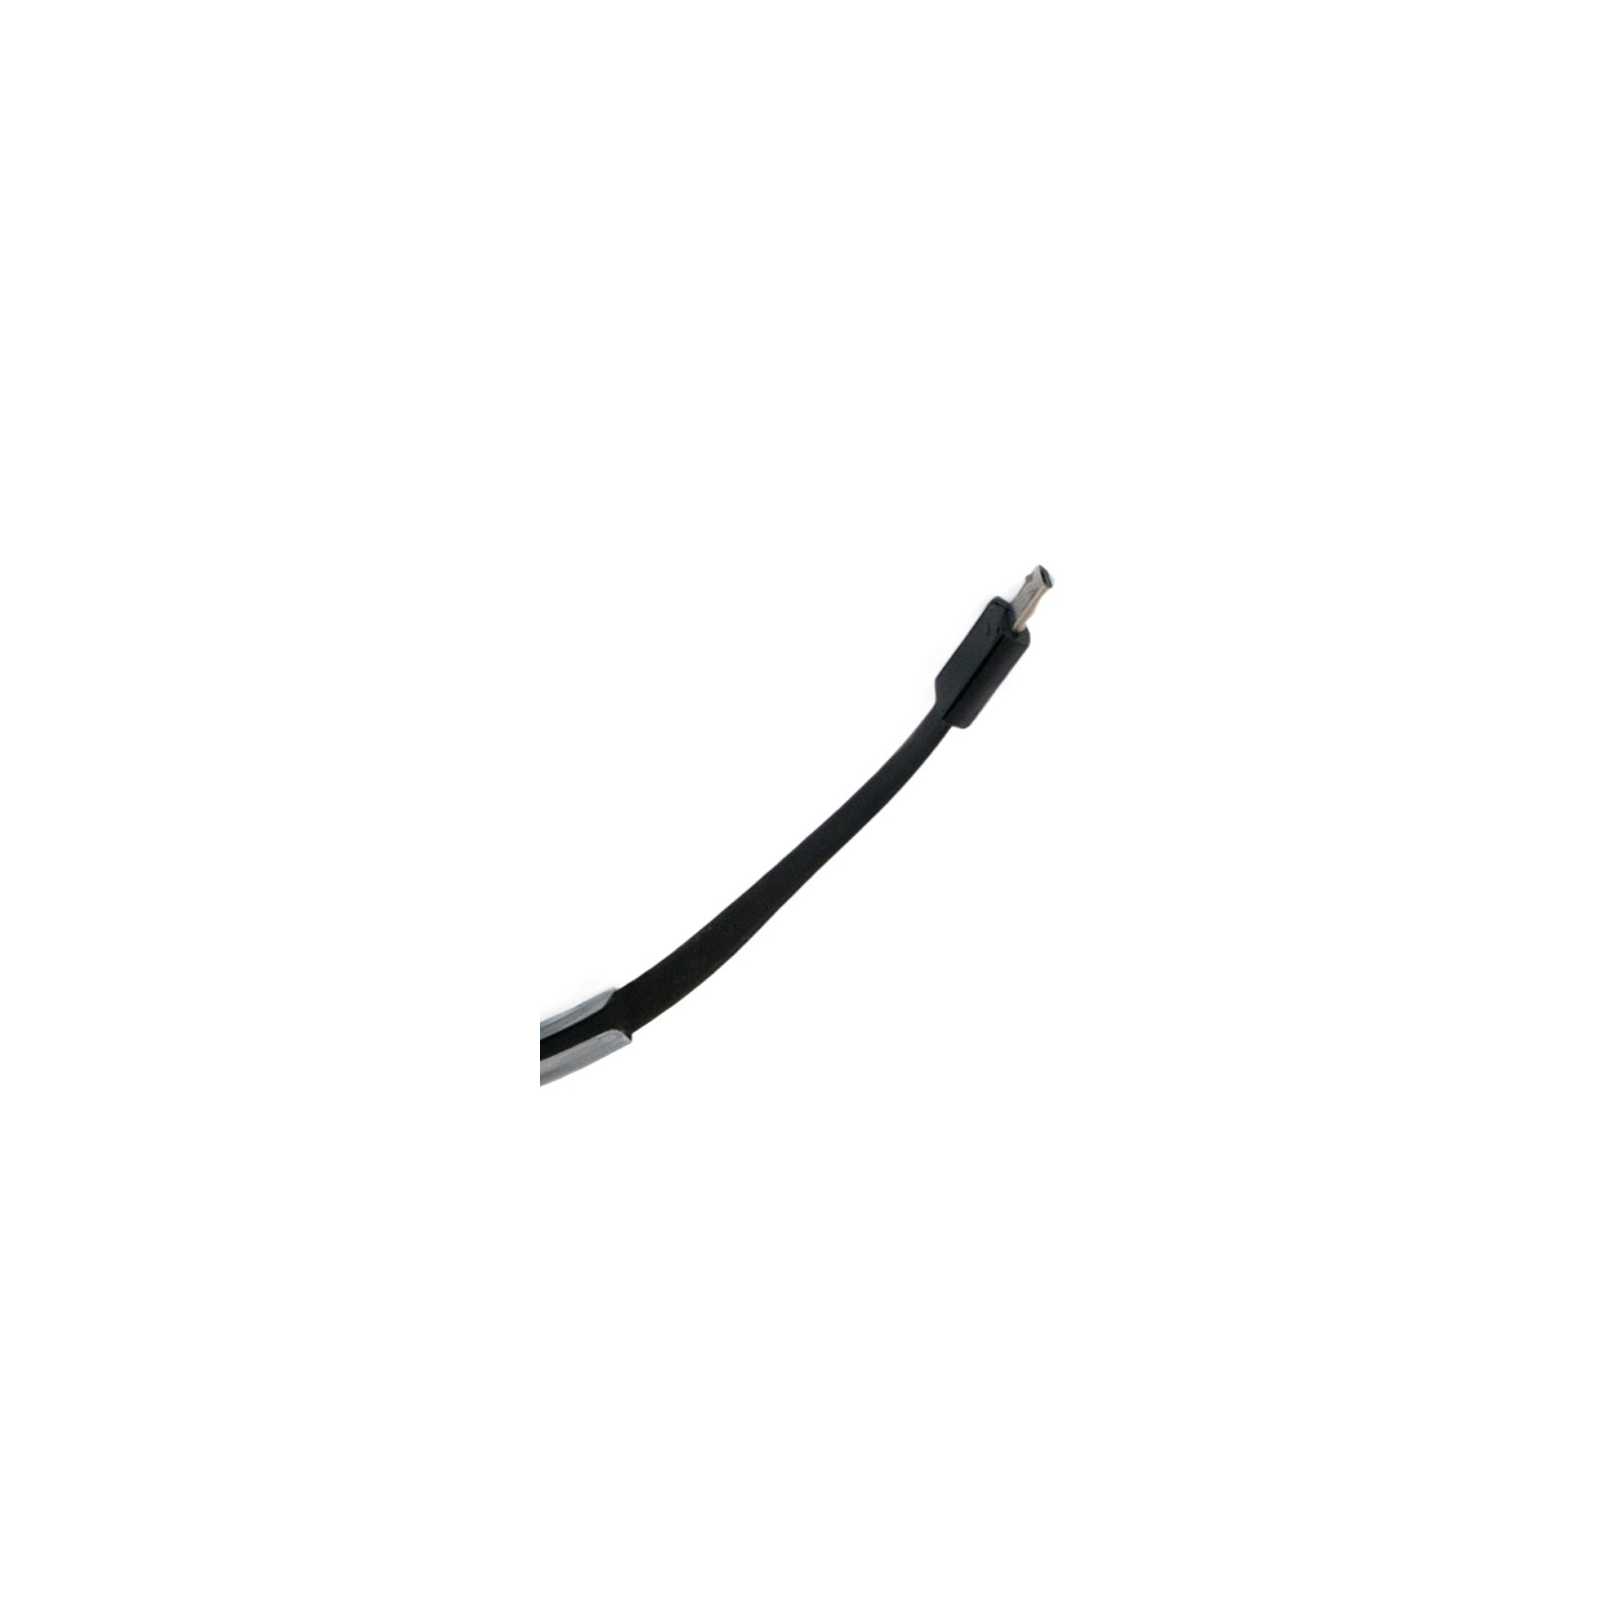 Дата кабель USB 2.0 AM to Micro 5P 0.2m браслет black Extradigital (KBU1783) изображение 5